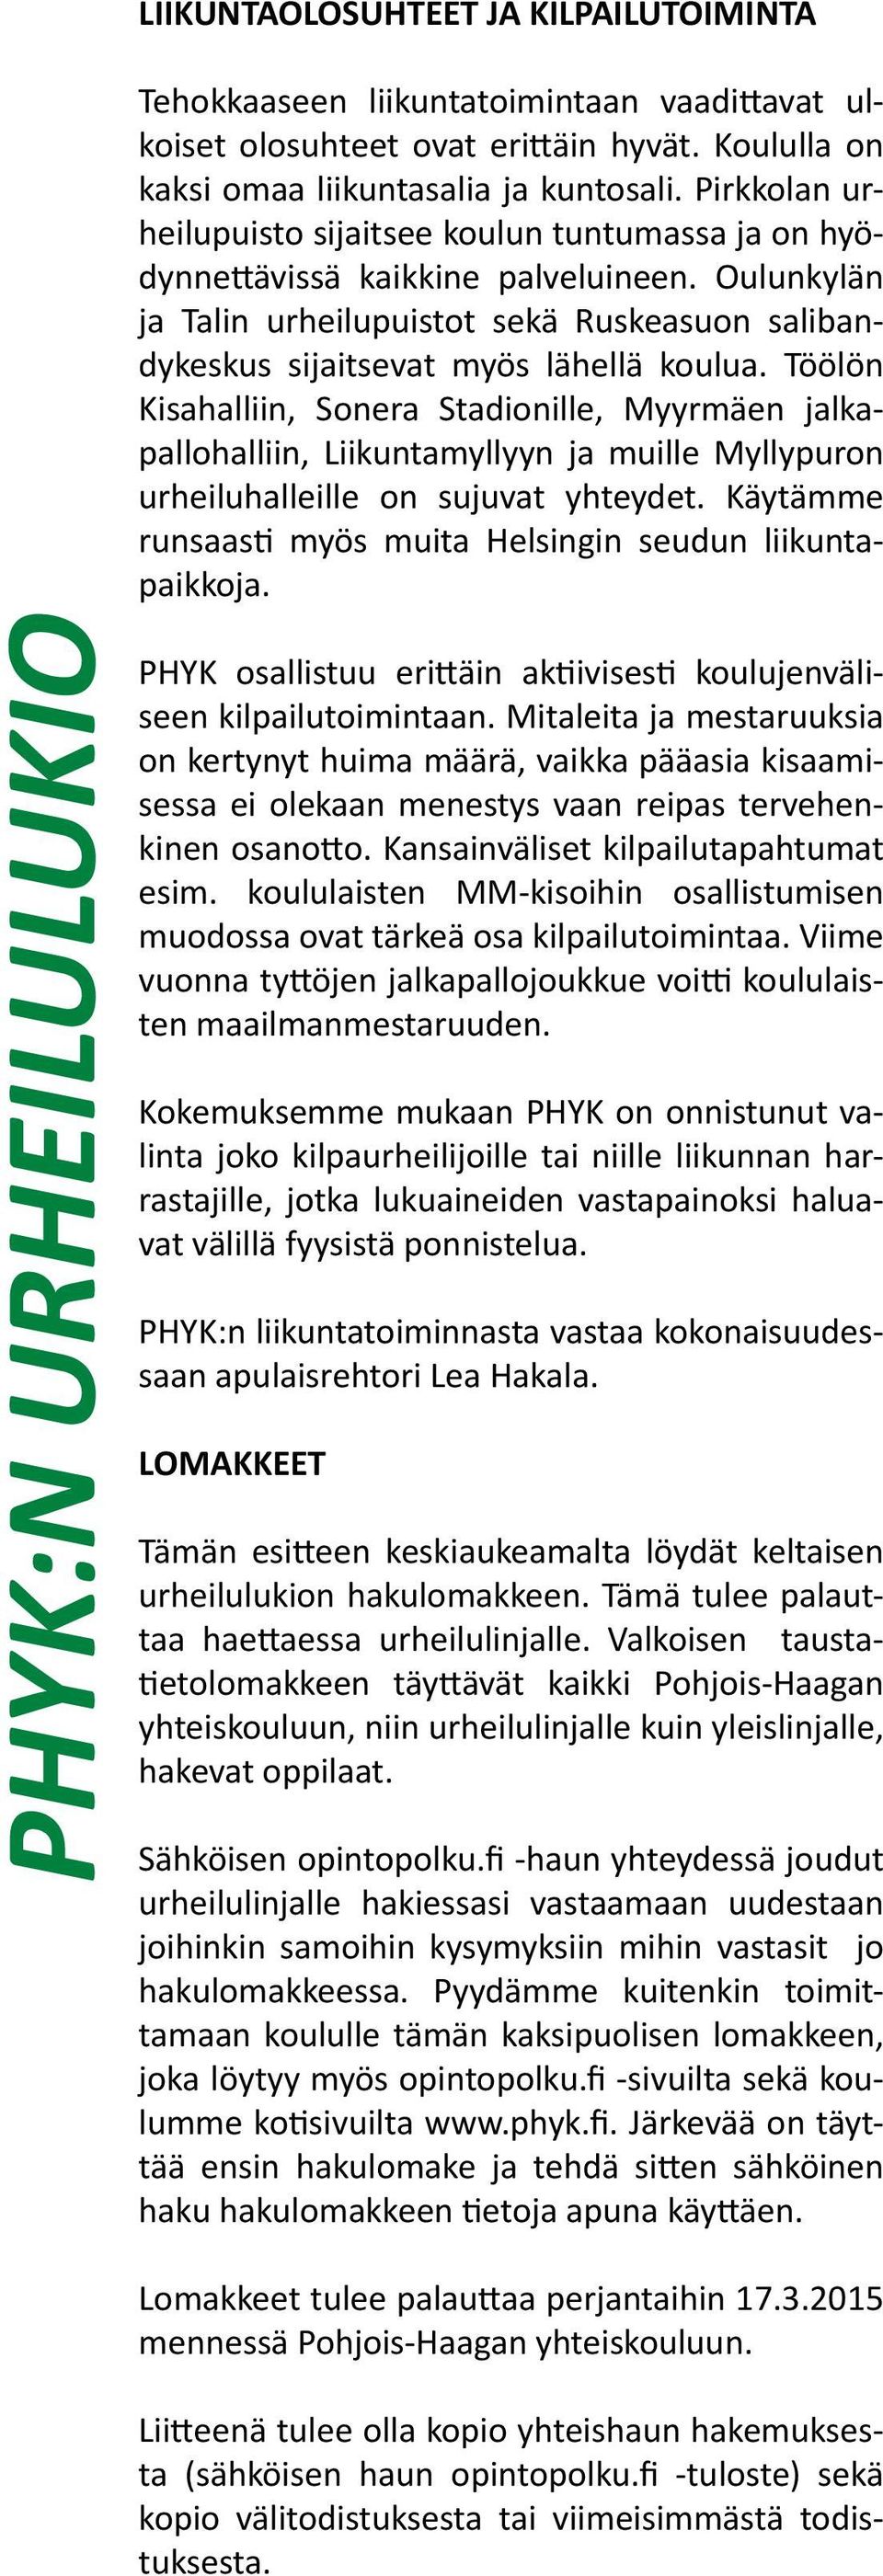 Töölön Kisahalliin, Sonera Stadionille, Myyrmäen jalkapallohalliin, Liikuntamyllyyn ja muille Myllypuron urheiluhalleille on sujuvat yhteydet.